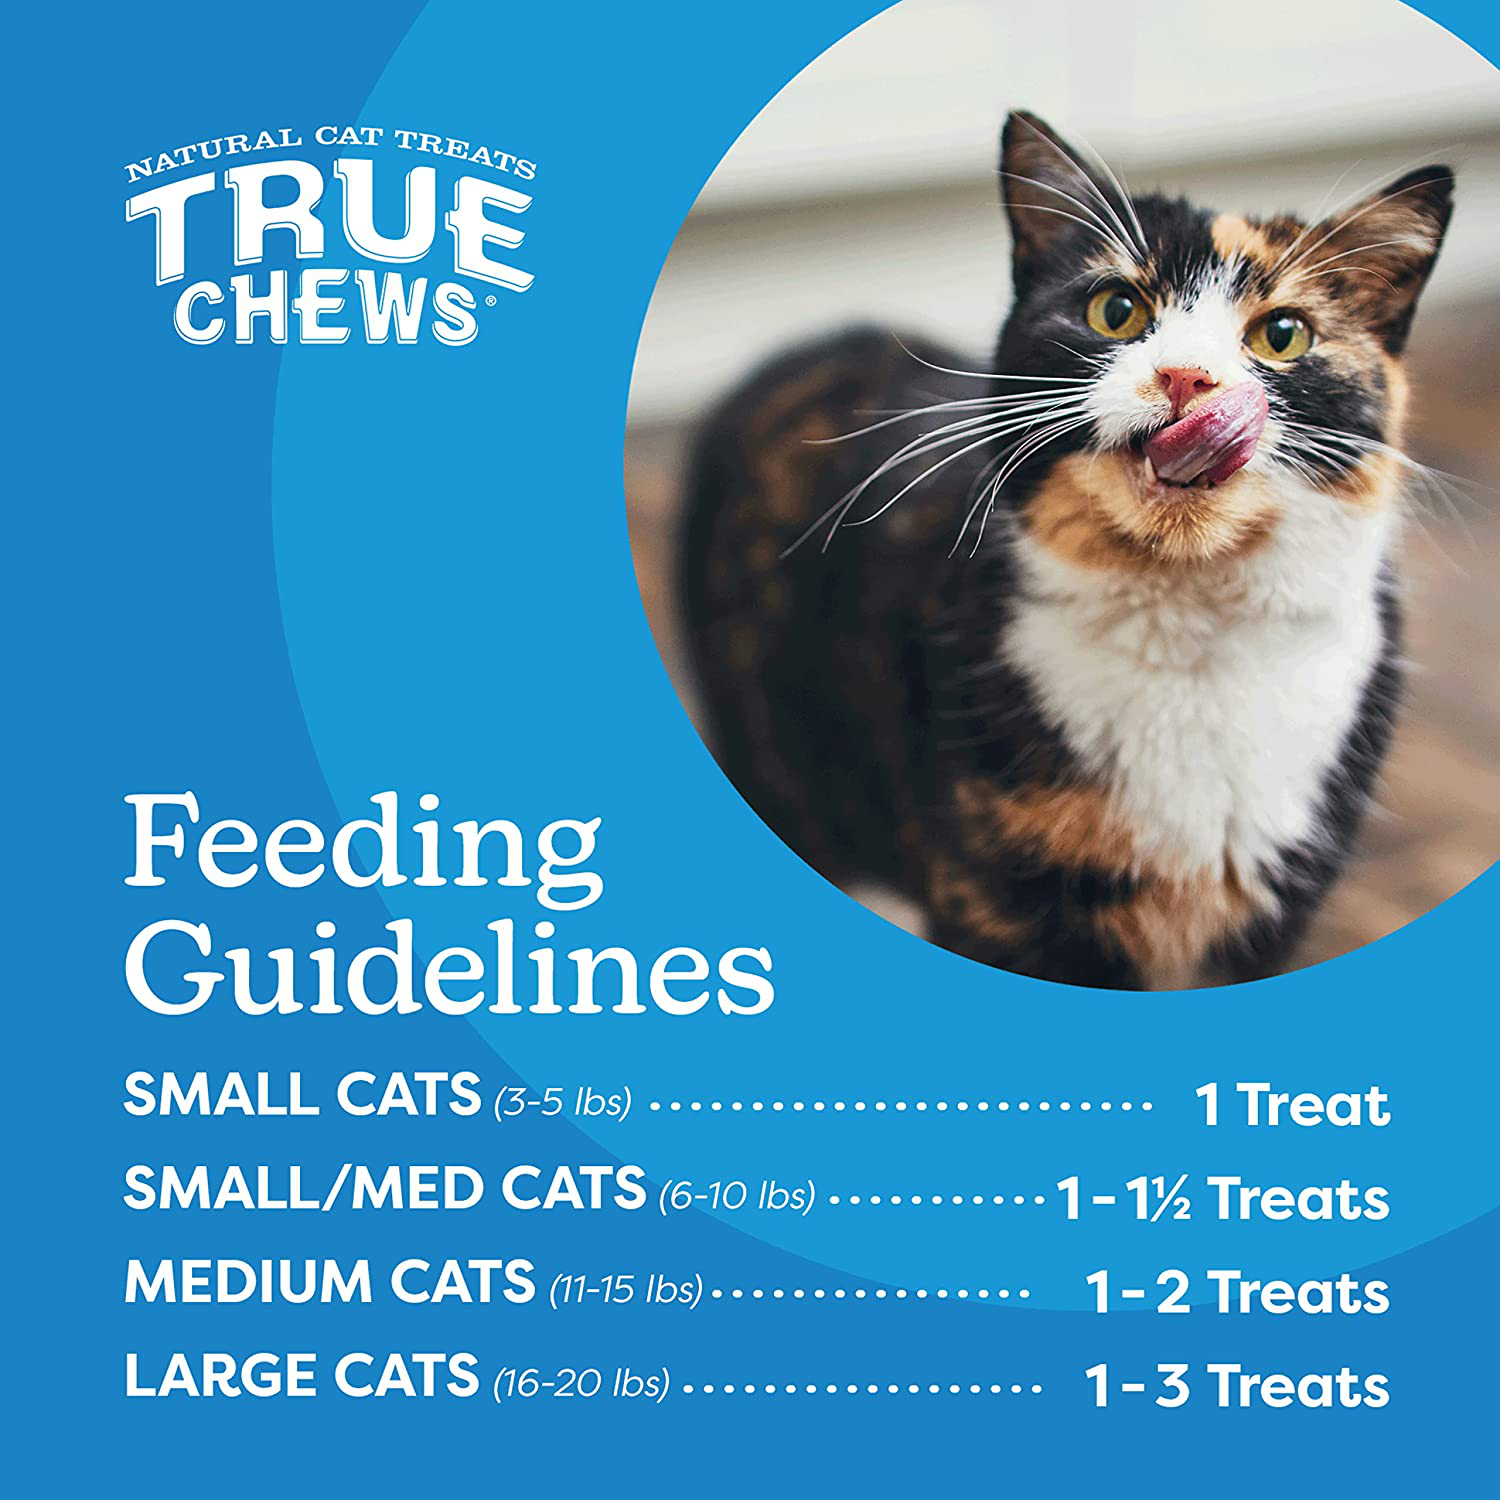 True Chews Cat Sticks Alaska Pollock Recipe 3Oz Animals & Pet Supplies > Pet Supplies > Cat Supplies > Cat Treats True Chews   